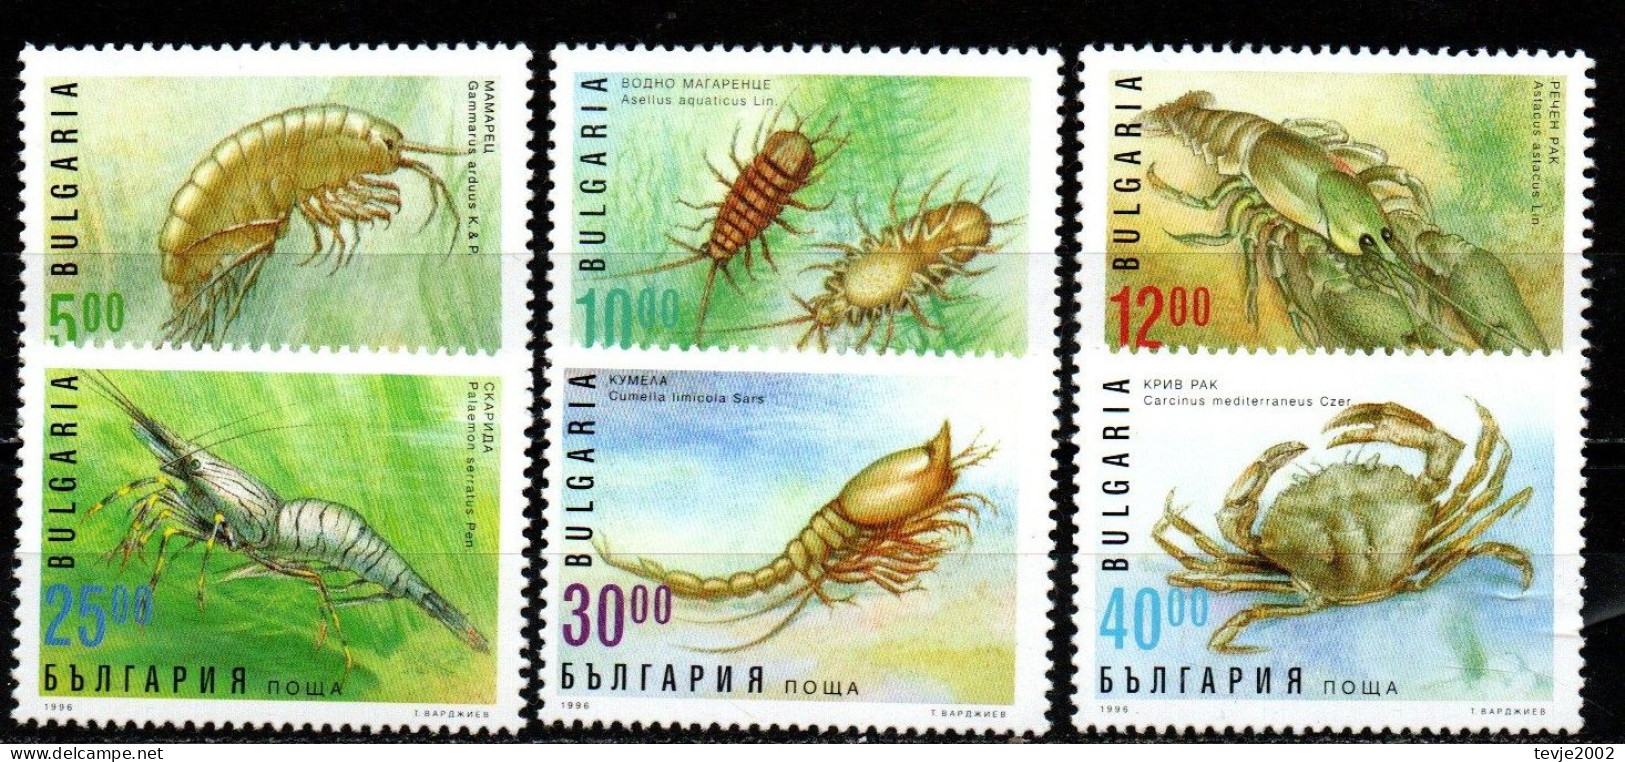 Bulgarien 1996 - Mi.Nr. 4238 - 4243 - Postfrisch MNH - Tiere Animals Krabben Crabs - Schaaldieren